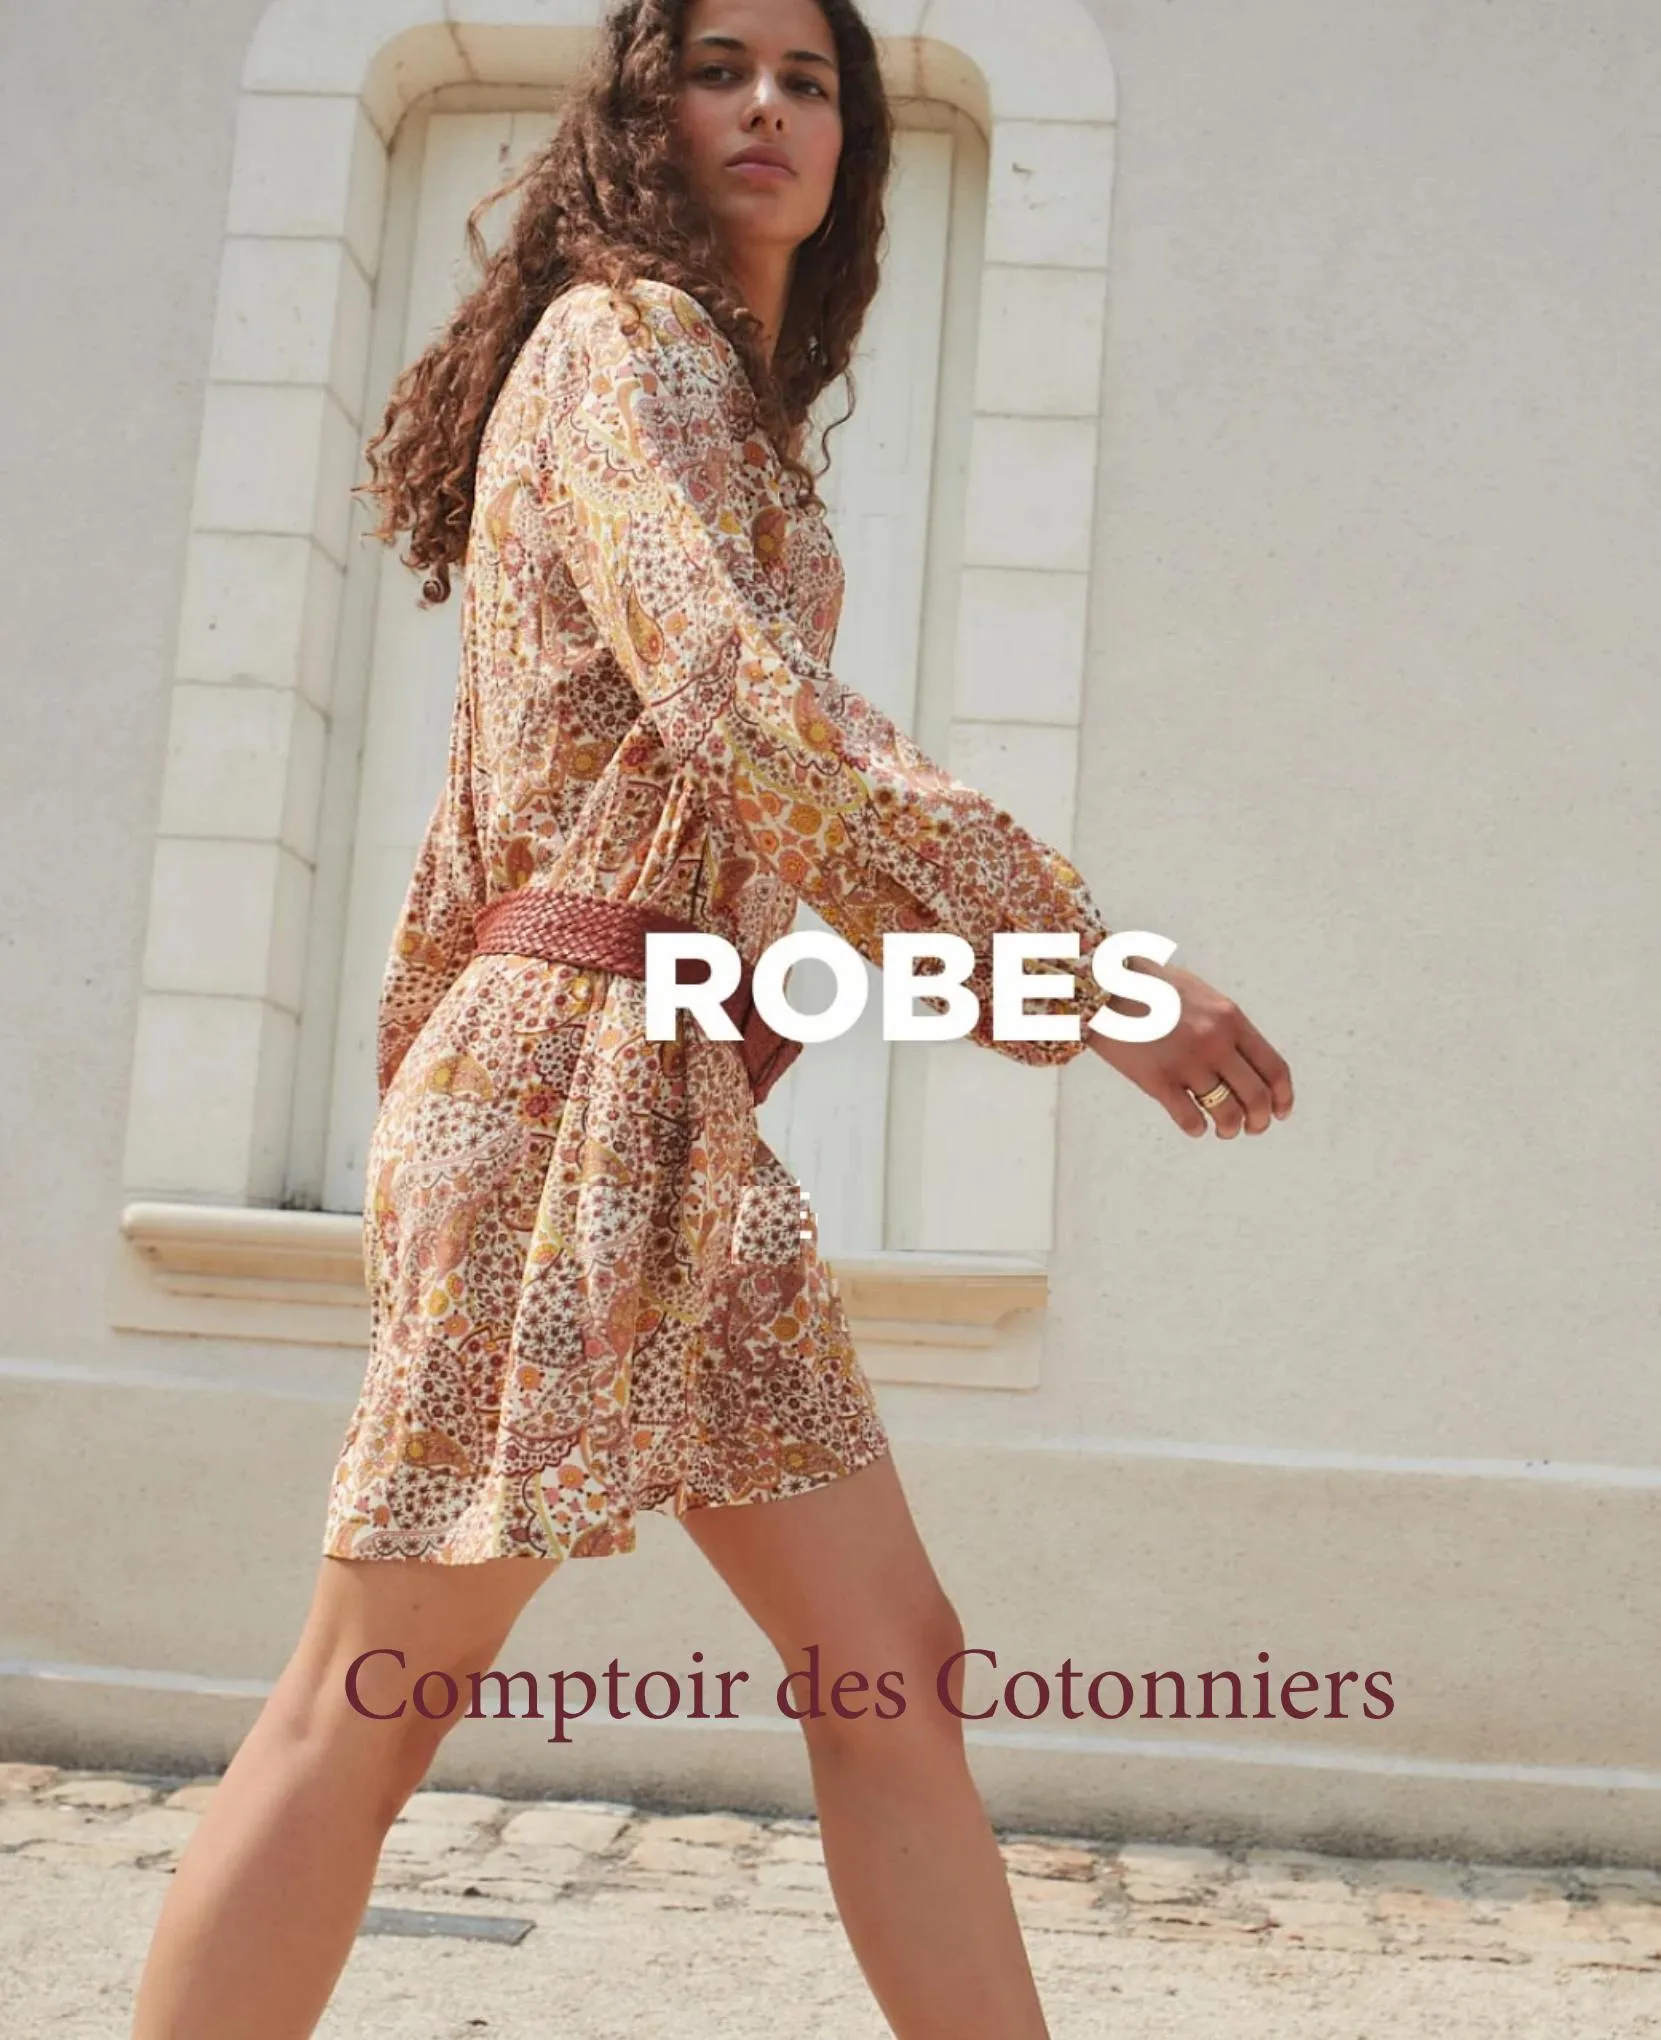 Catalogue Comptoir des contonniers Robes, page 00001